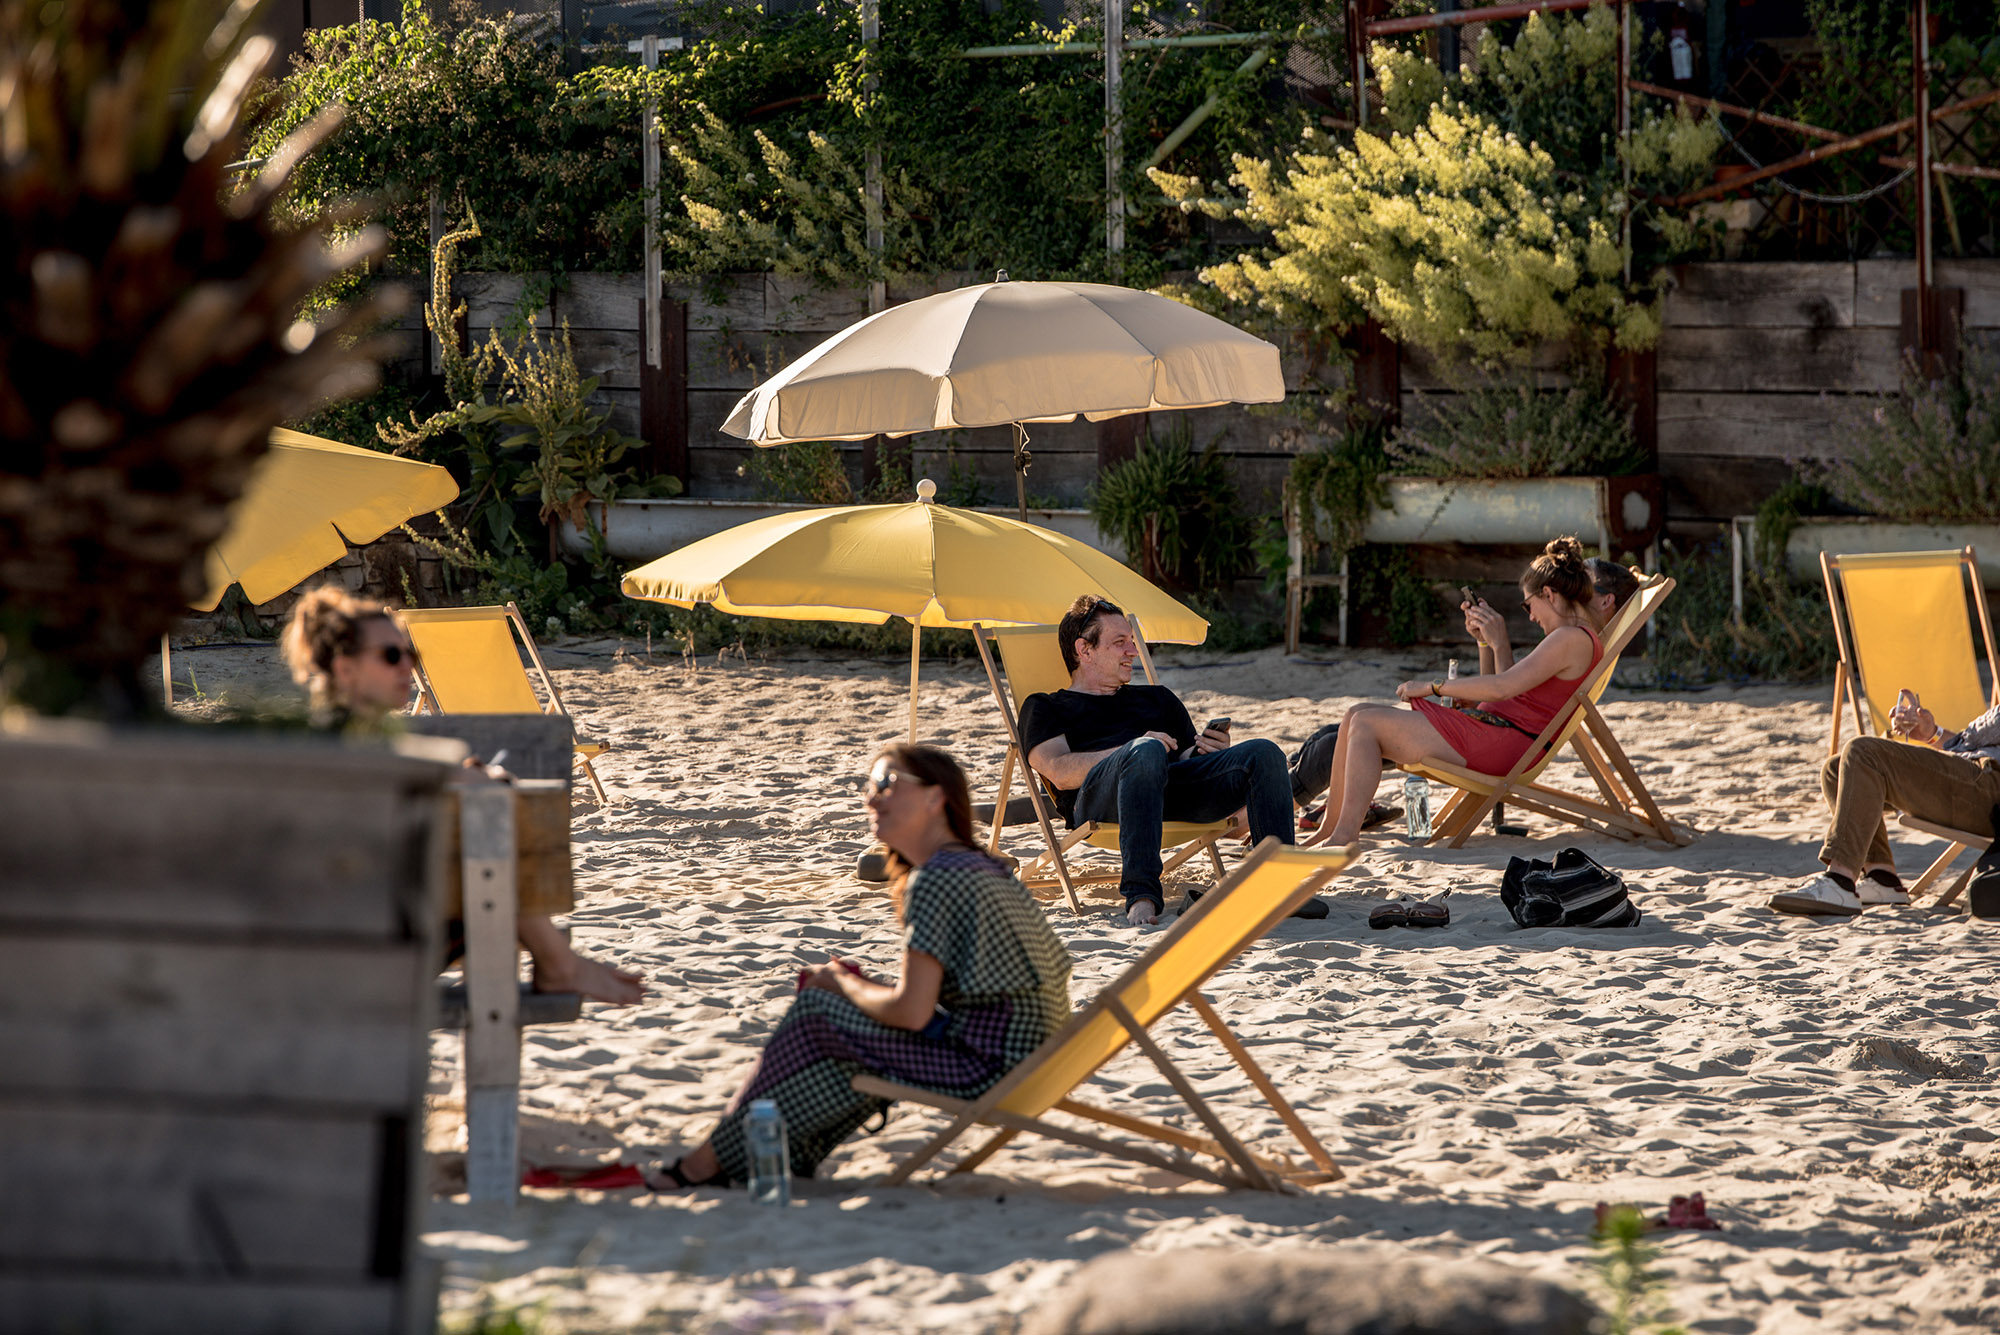 Sommerliche Stimmung auf dem Gelände der Malzfabrik – Menschen sitzen auf Stoffklappstühlen unter Sonnenschirmen am Stand.